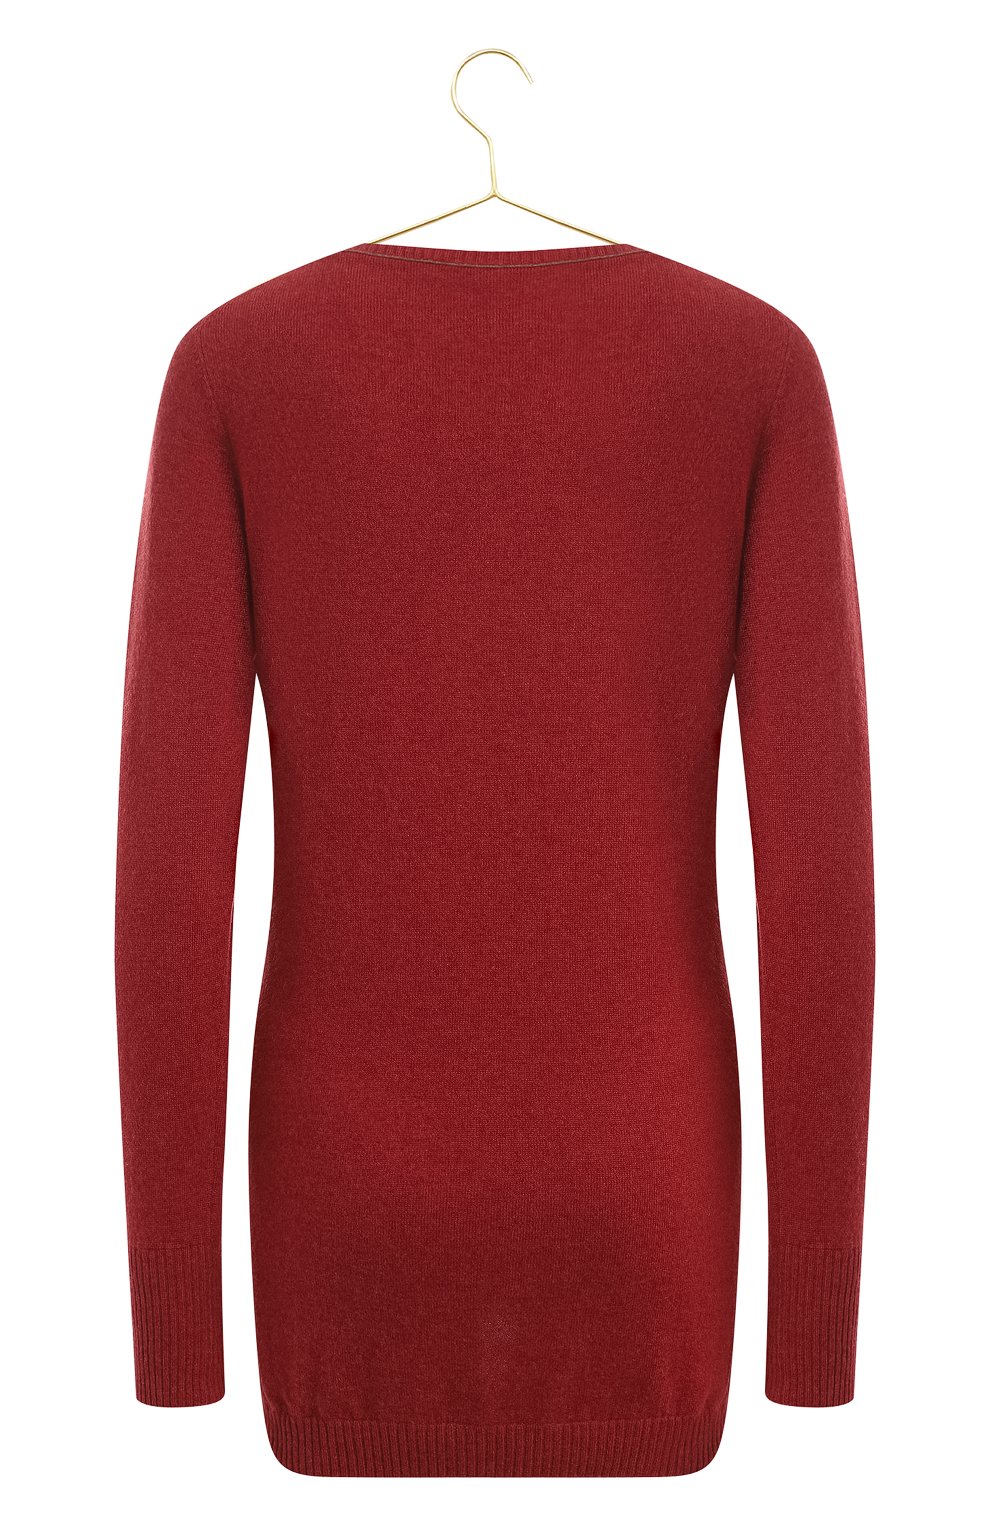 Кашемировый пуловер | Brunello Cucinelli | Красный - 2